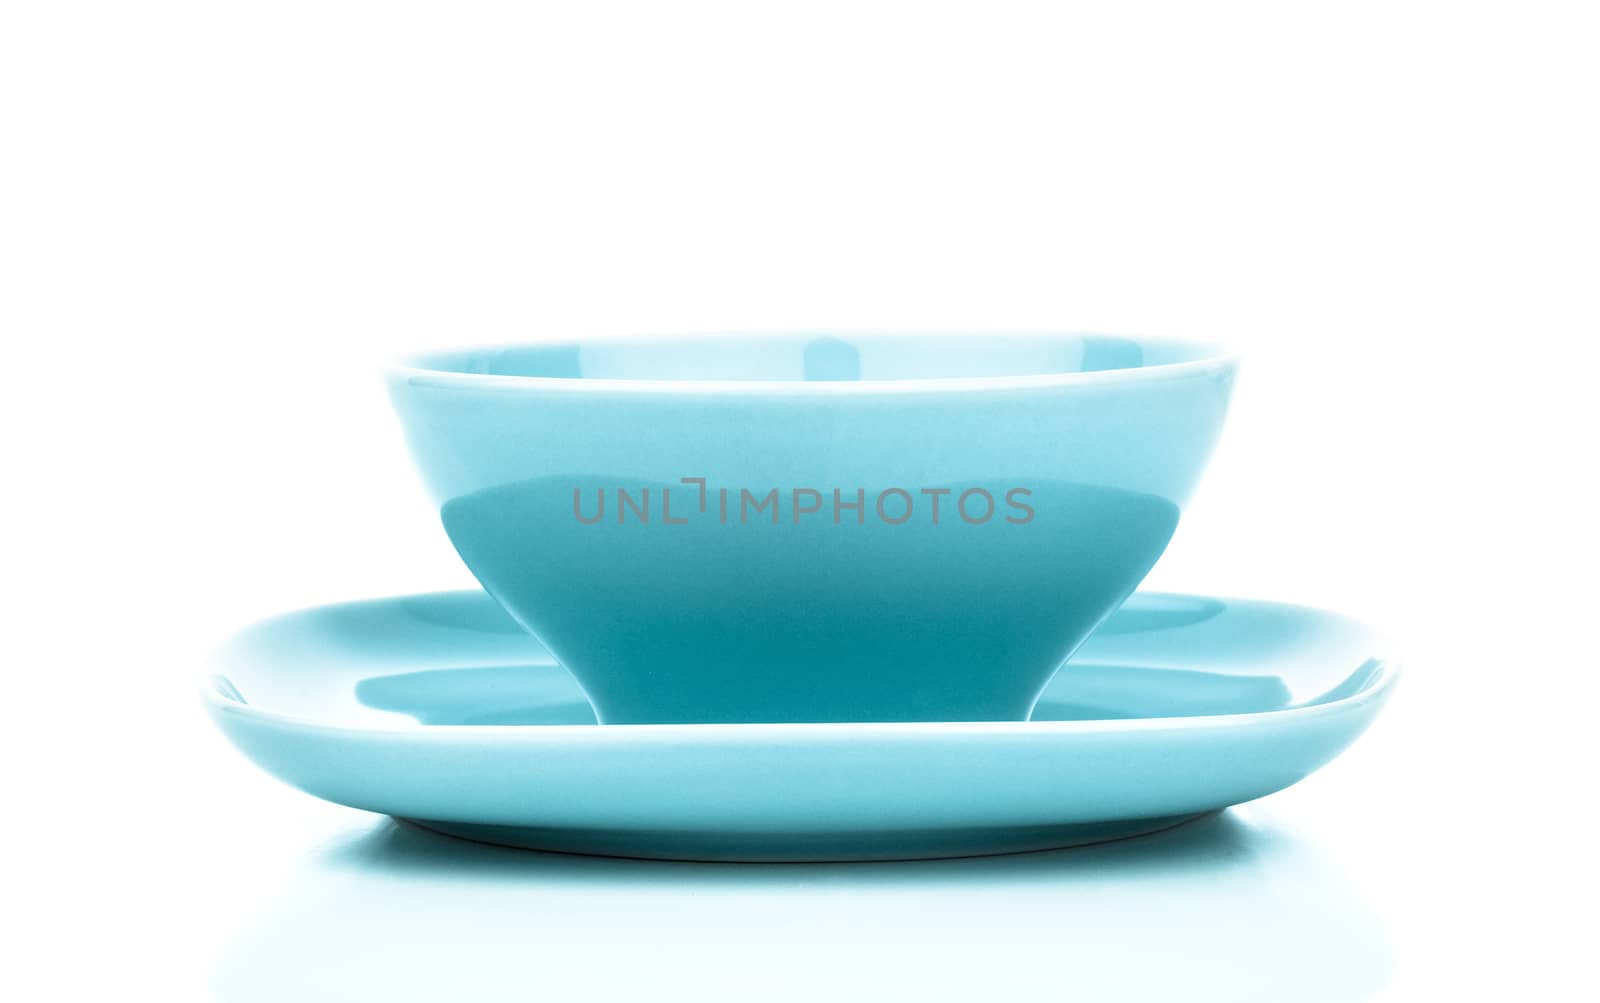 empty blue bowl on white background by motorolka